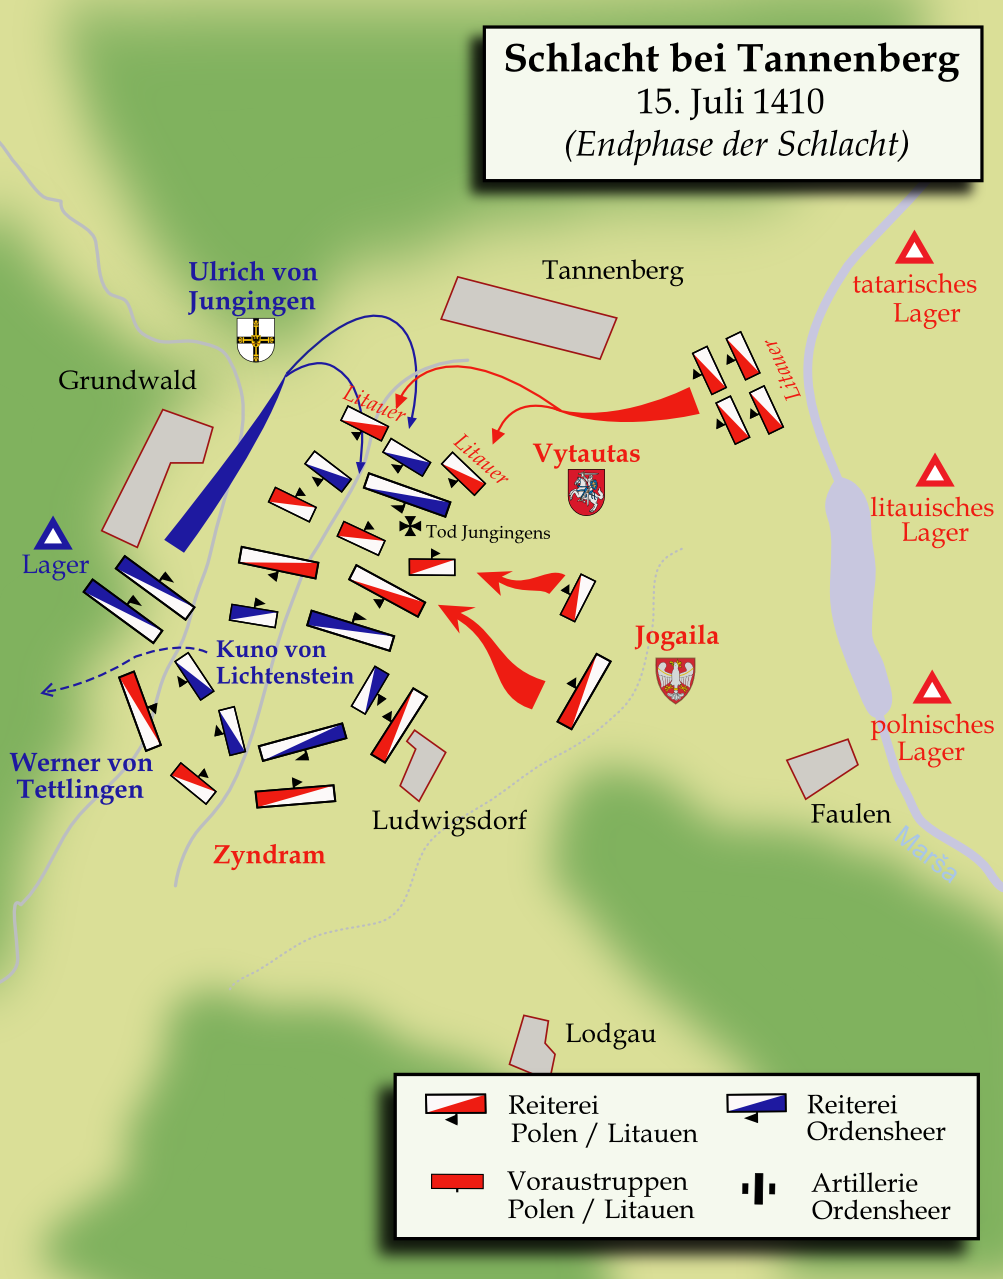 Schlacht bei Tannenberg (1410)